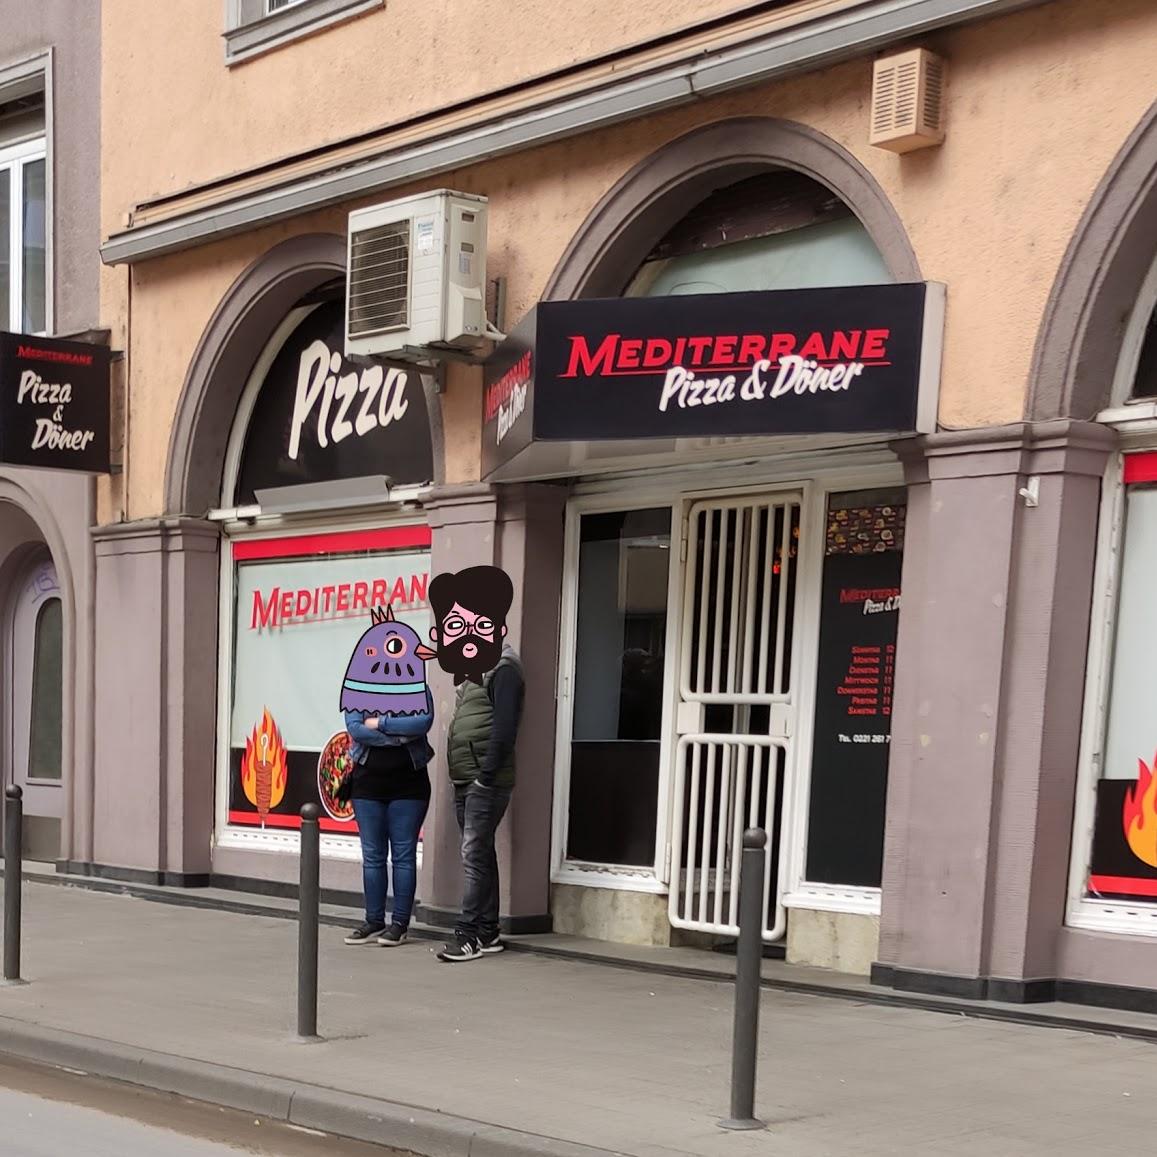 Restaurant "Pizza & Döner Mediterrane" in Köln